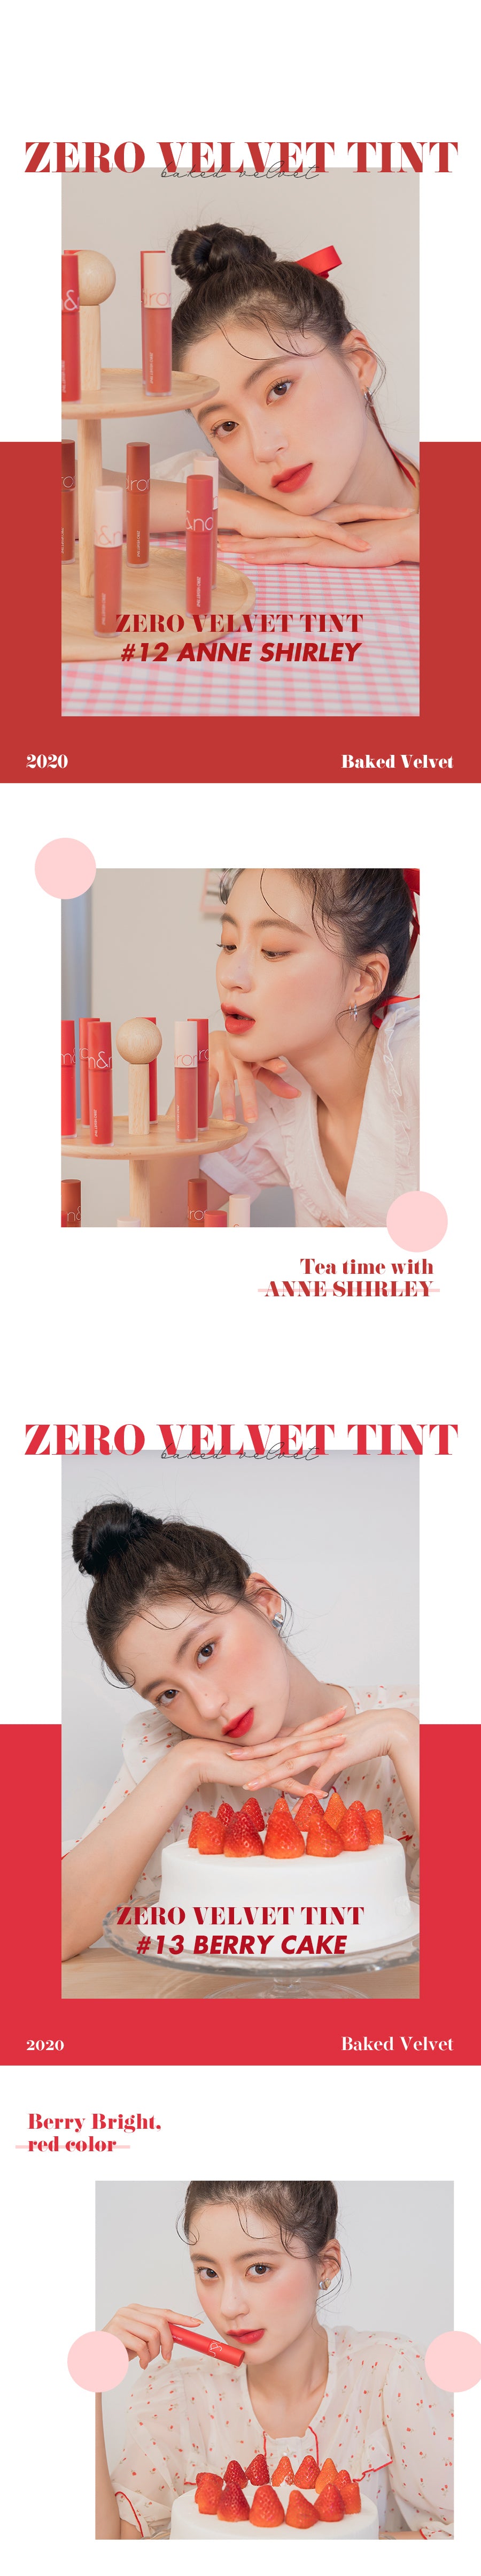 rom&nd ZERO VELVET TINT Bakery k beauty korean cosmetic Korea Australia life makeup